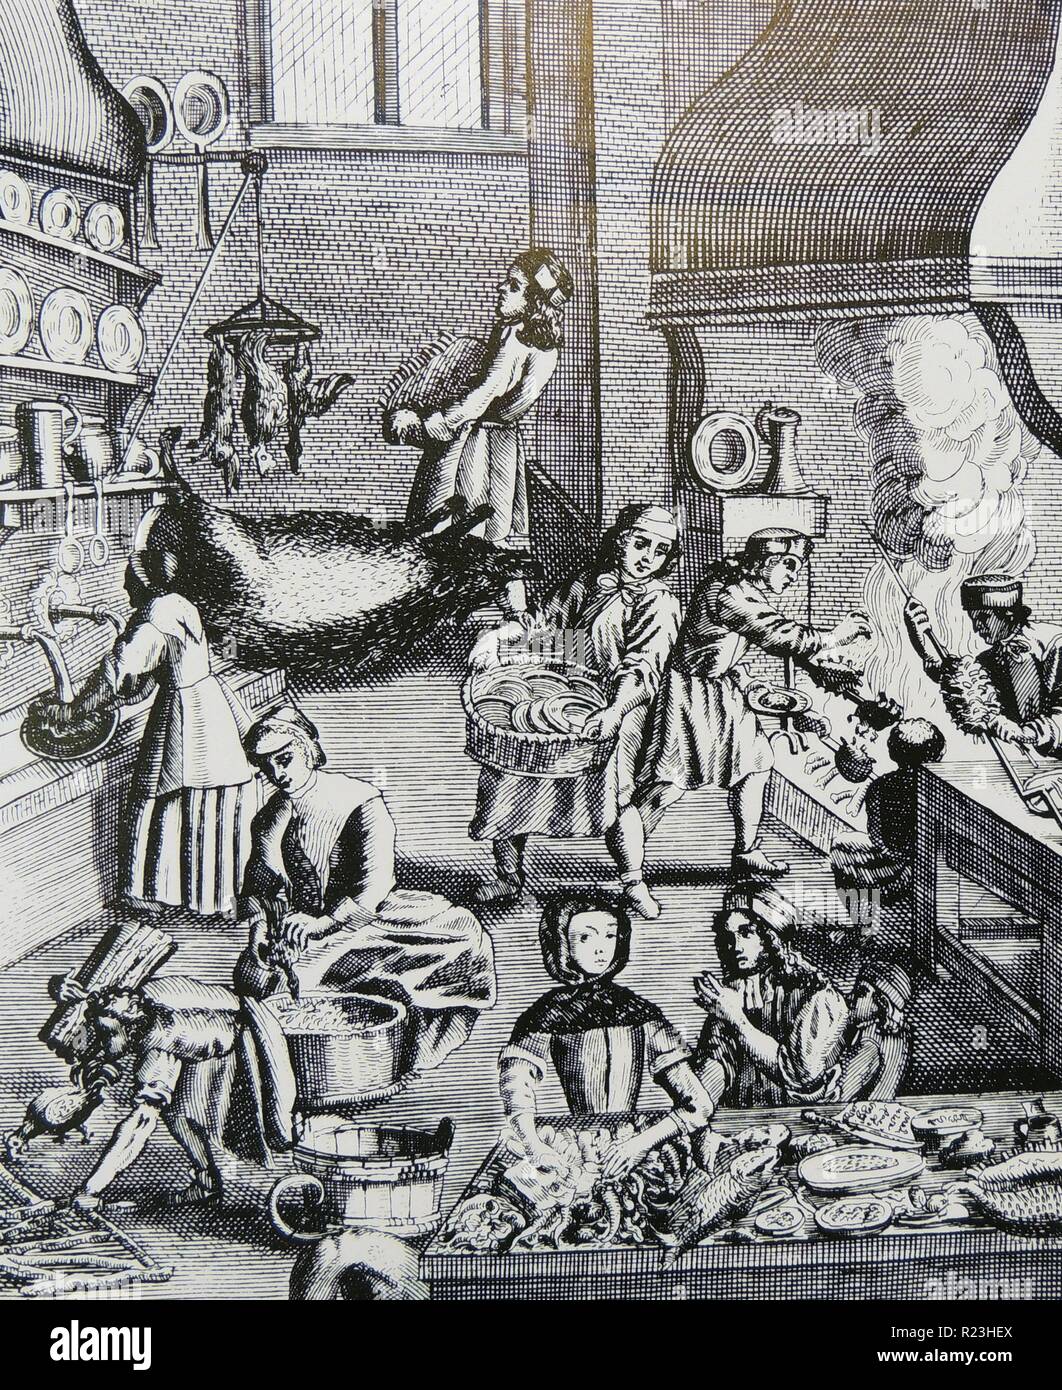 Vue générale de la cuisine d'une grande maison montrant la préparation et la cuisson des aliments. À partir de ''Magia naturalis'', Nuremberg, 1715, par Johannes Baptista della Porta. Première édition. Gravure Banque D'Images